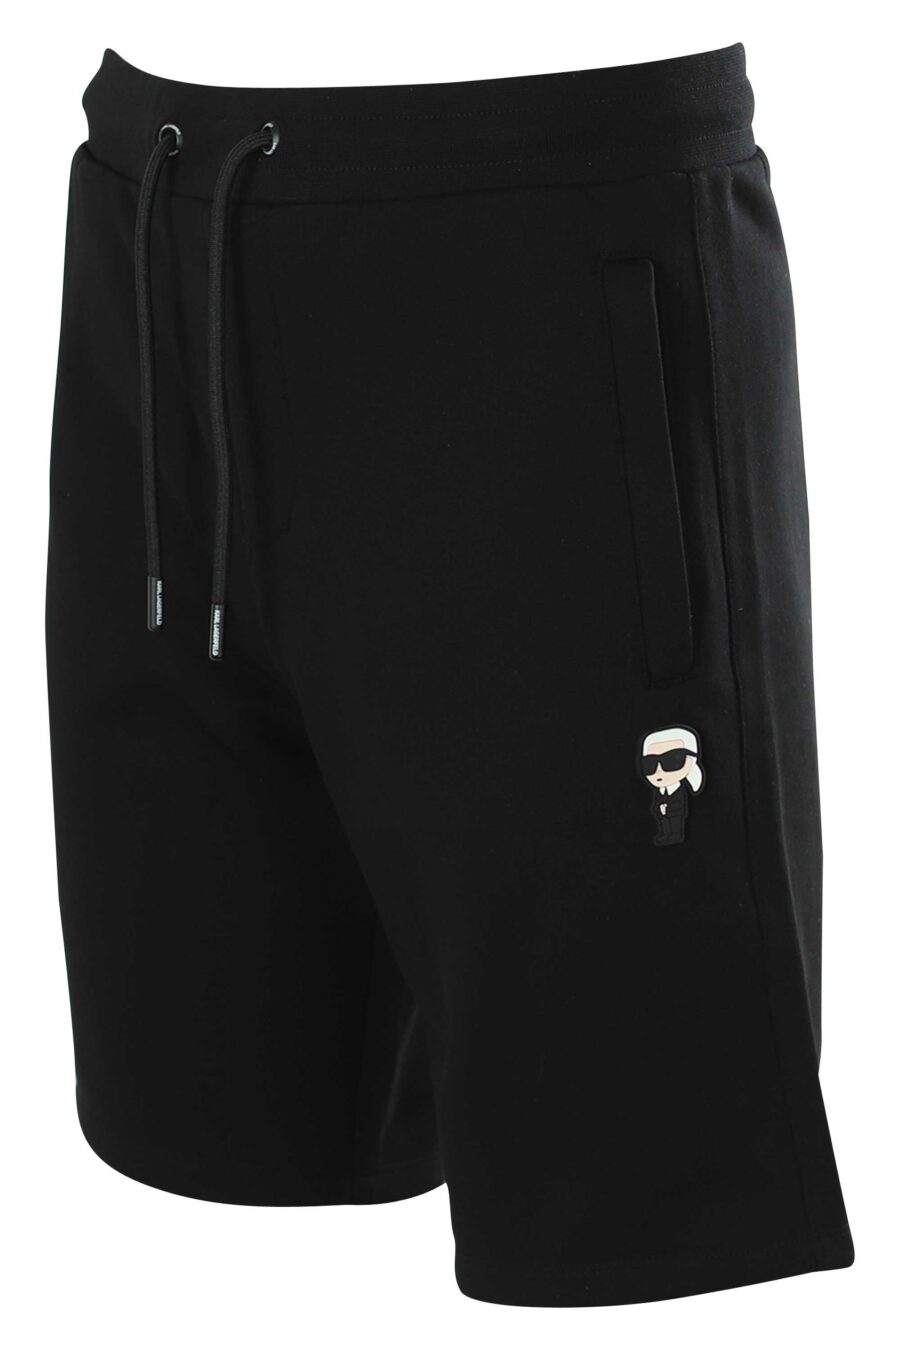 Pantalón de chándal corto negro con logo de goma - 4062226267267 2